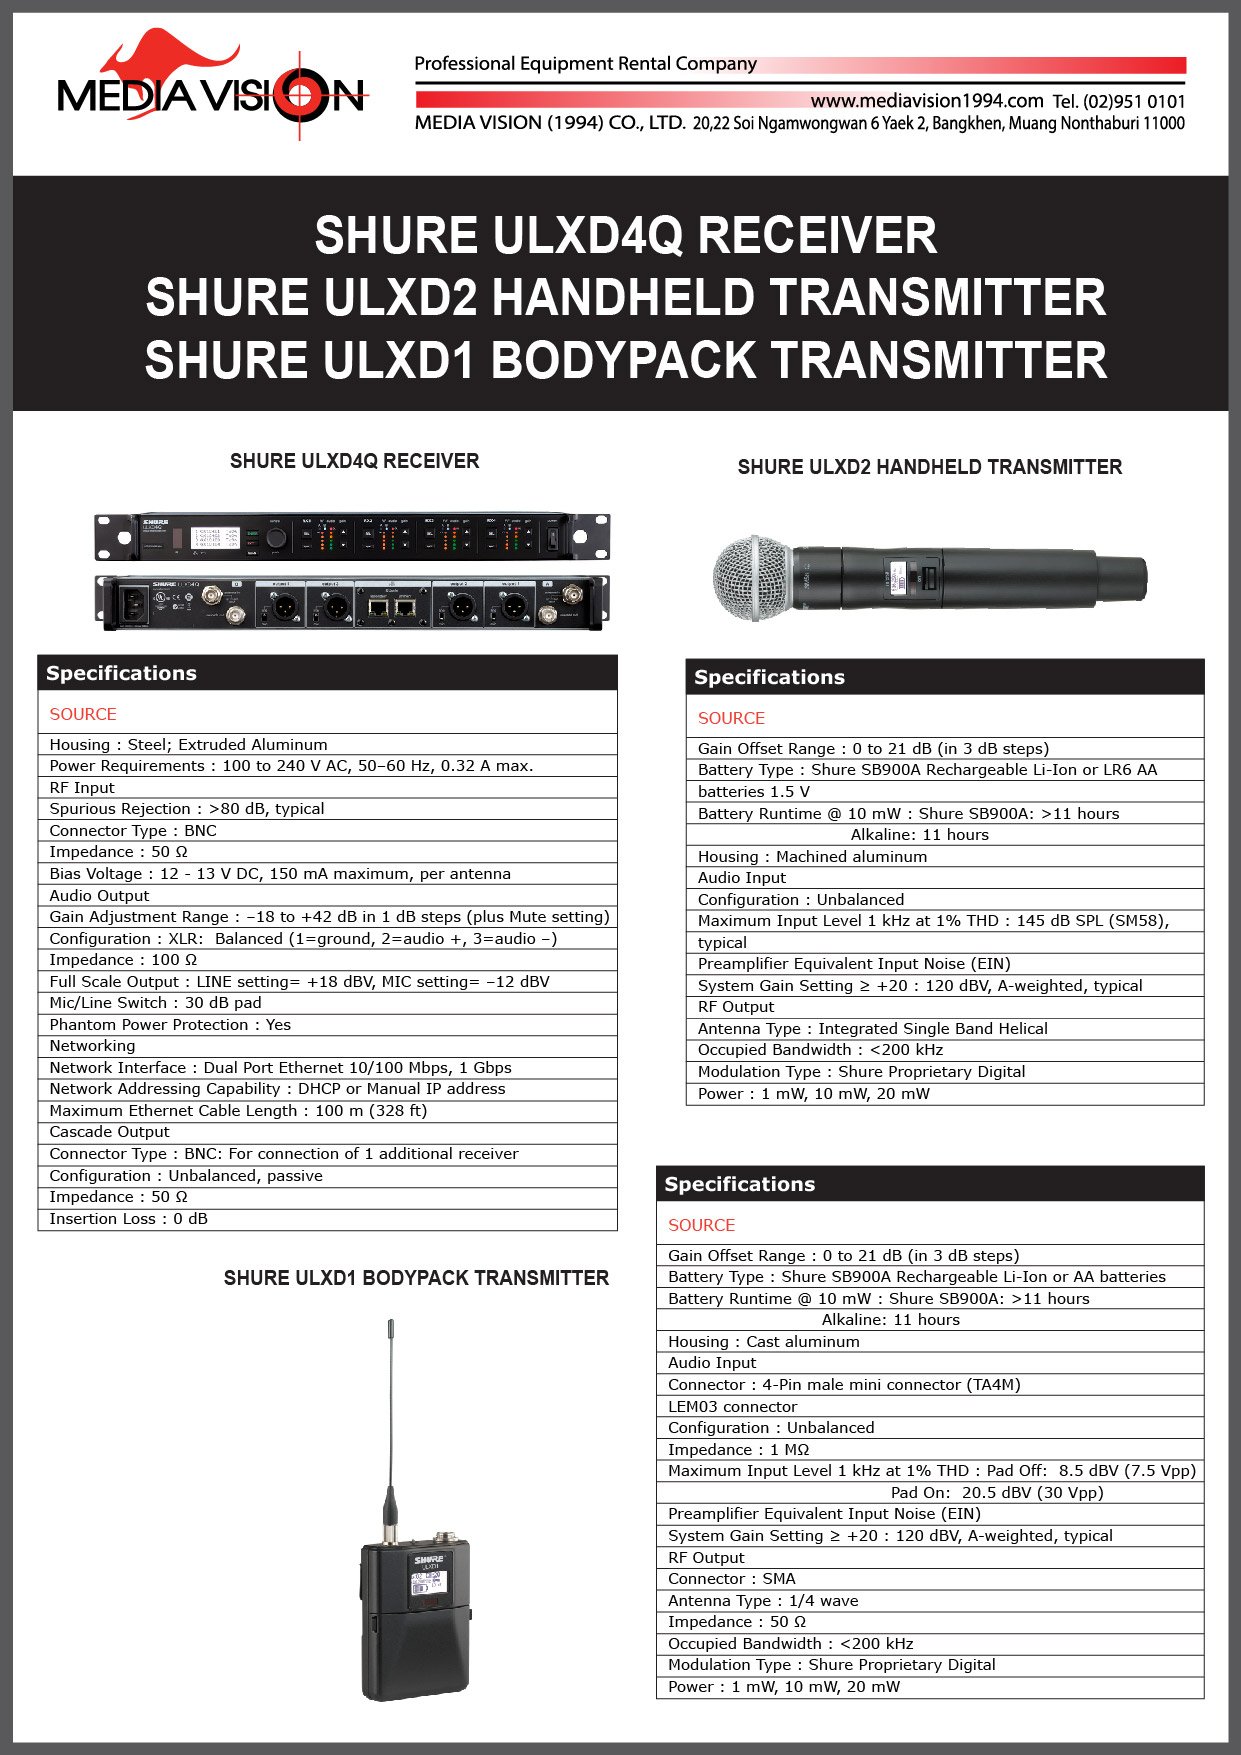 SHURE ULXD4Q RECEIVER, SHURE ULXD2 HANDHELD TRANSMITTER, SHURE ULXD1 BODYPACK TRANSMITTER